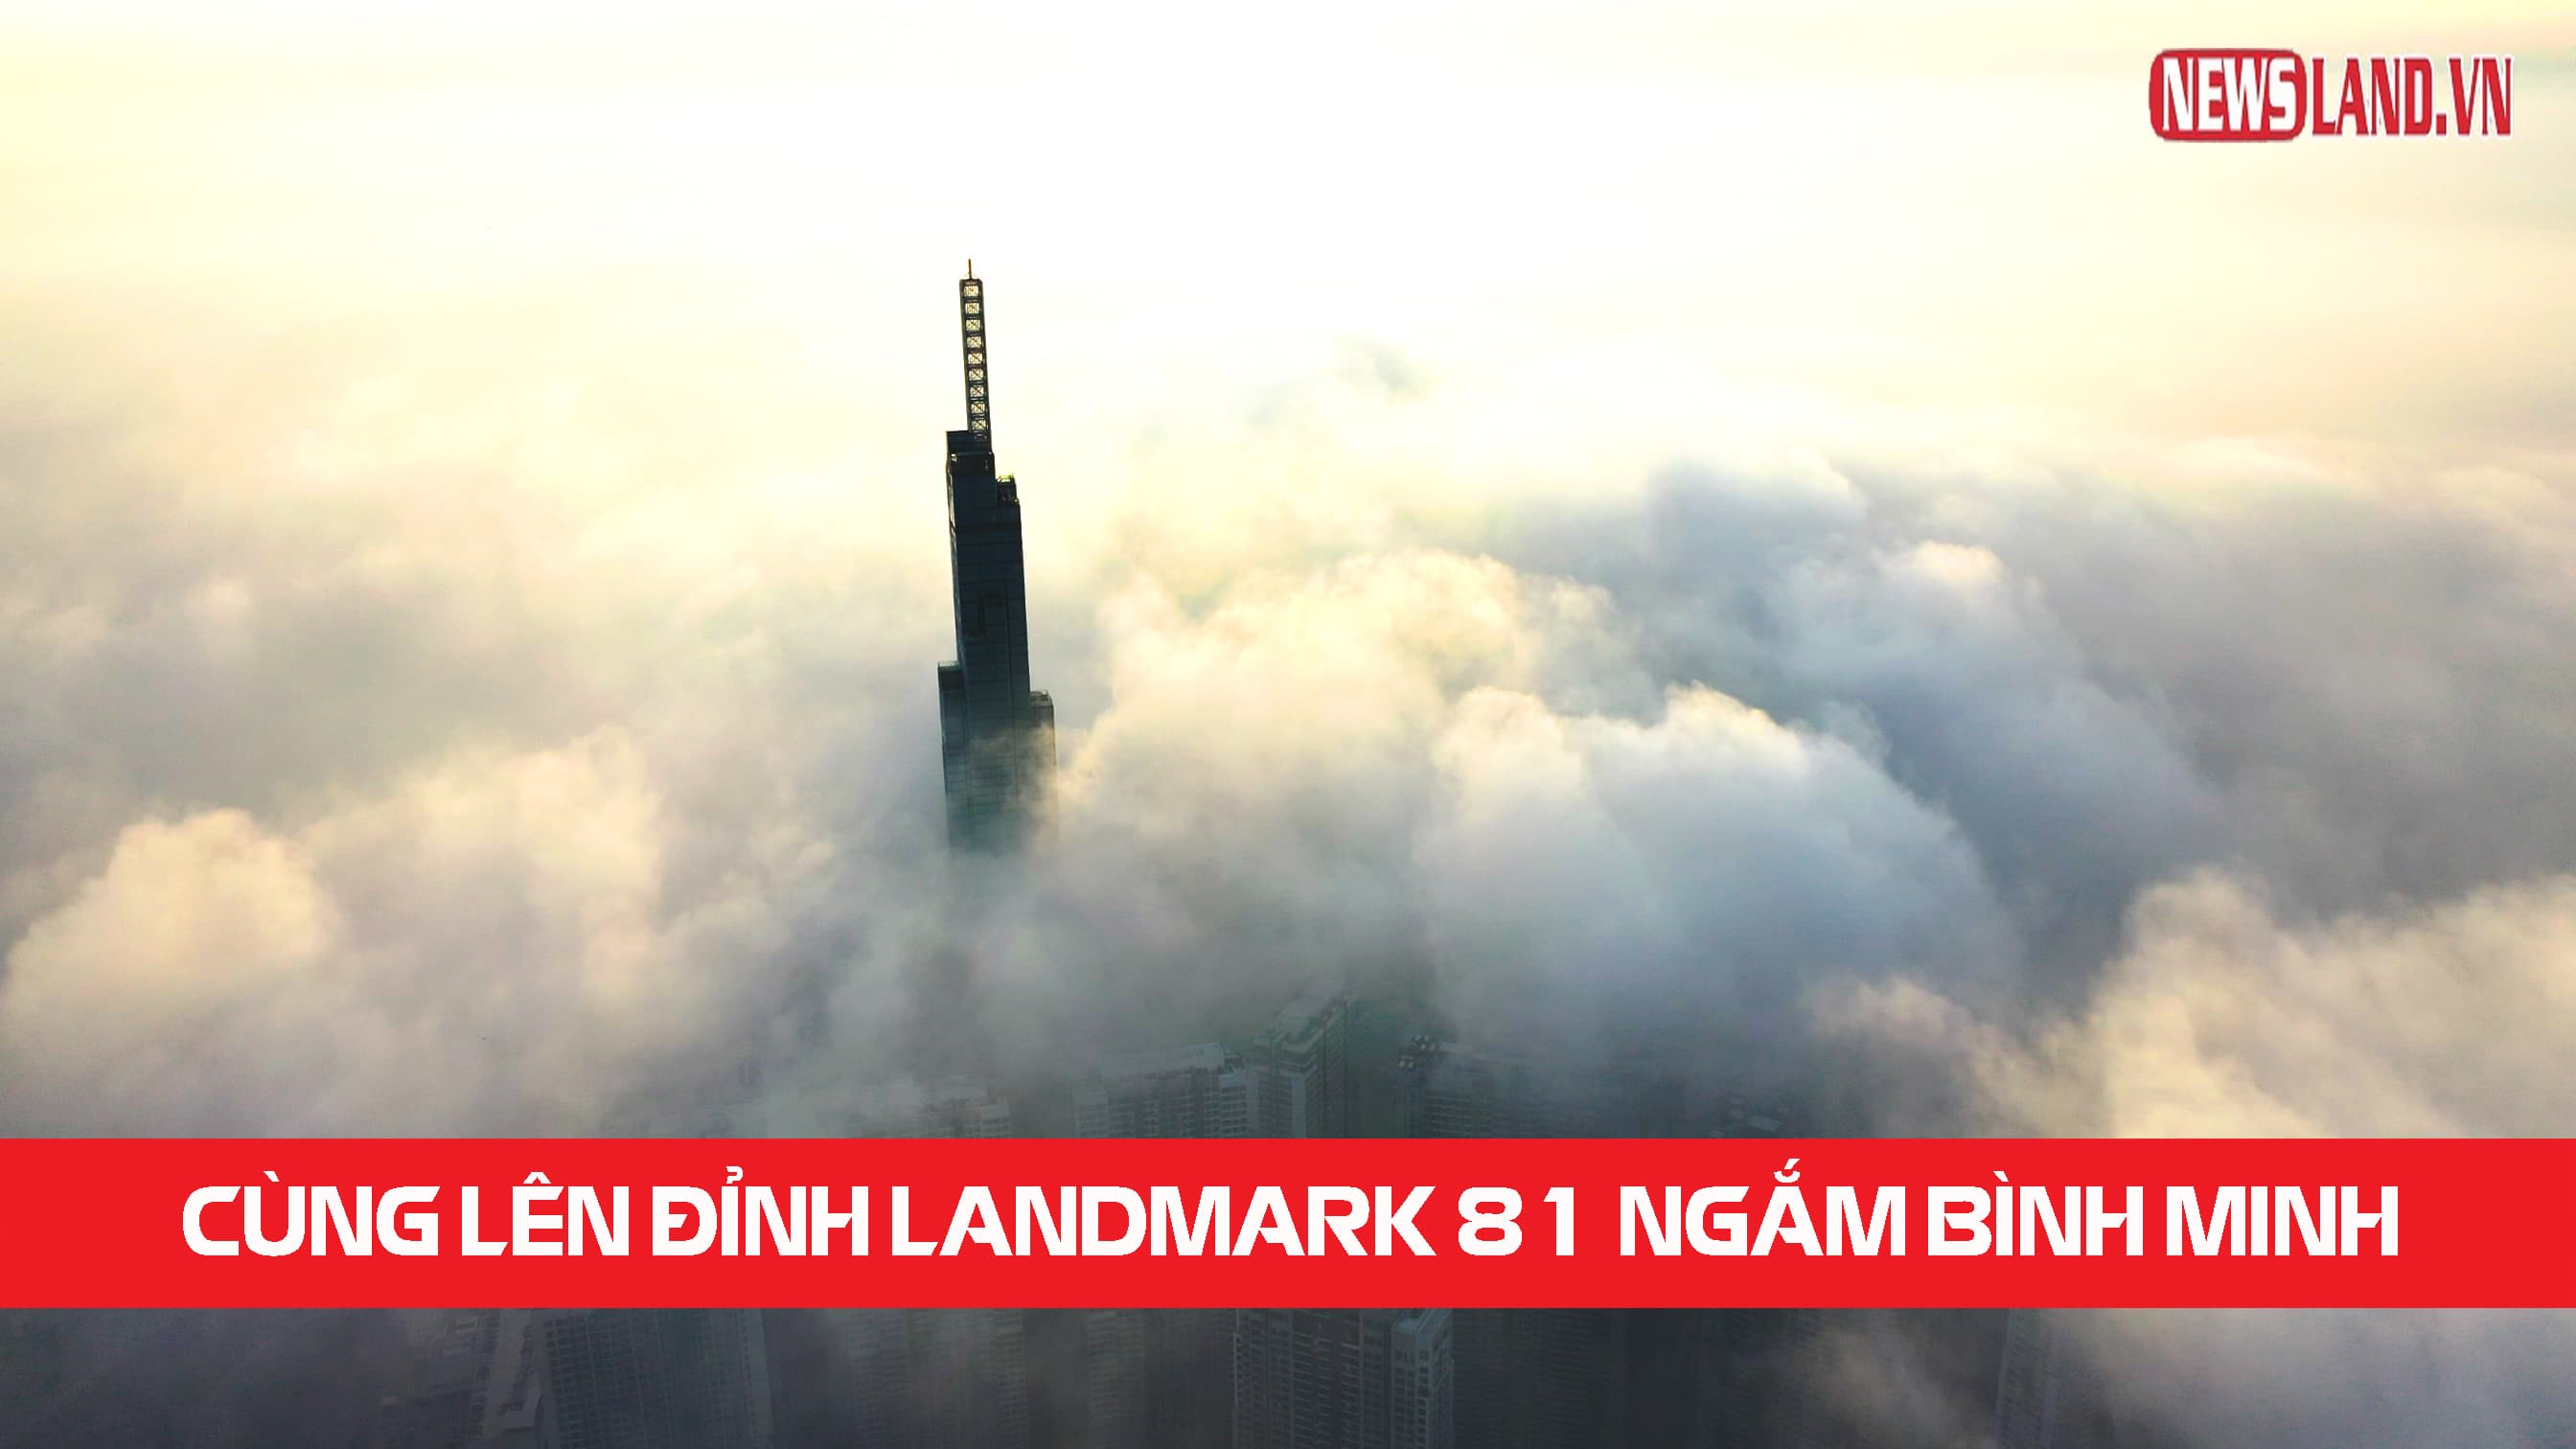 [VIDEO 4K] Cùng lên đỉnh Landmark 81 ngắm bình minh tại Sài Gòn 